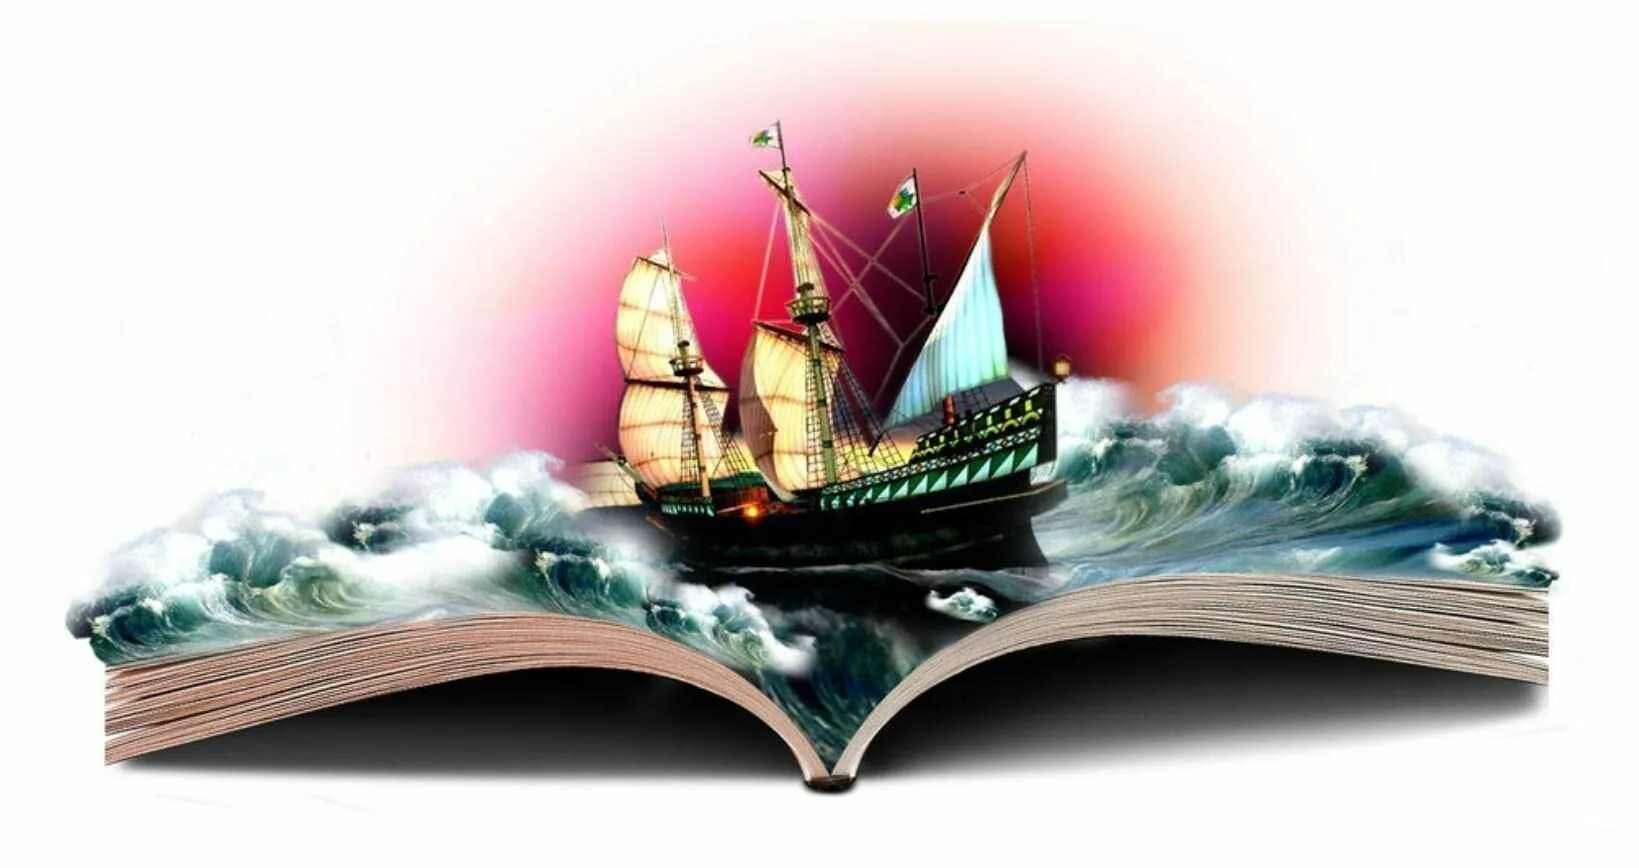 Литературная игра путешествие. Книга про корабли. Книги корабли мысли странствующие по волнам времени. Книги корабли мысли. Путешествие по книгам.